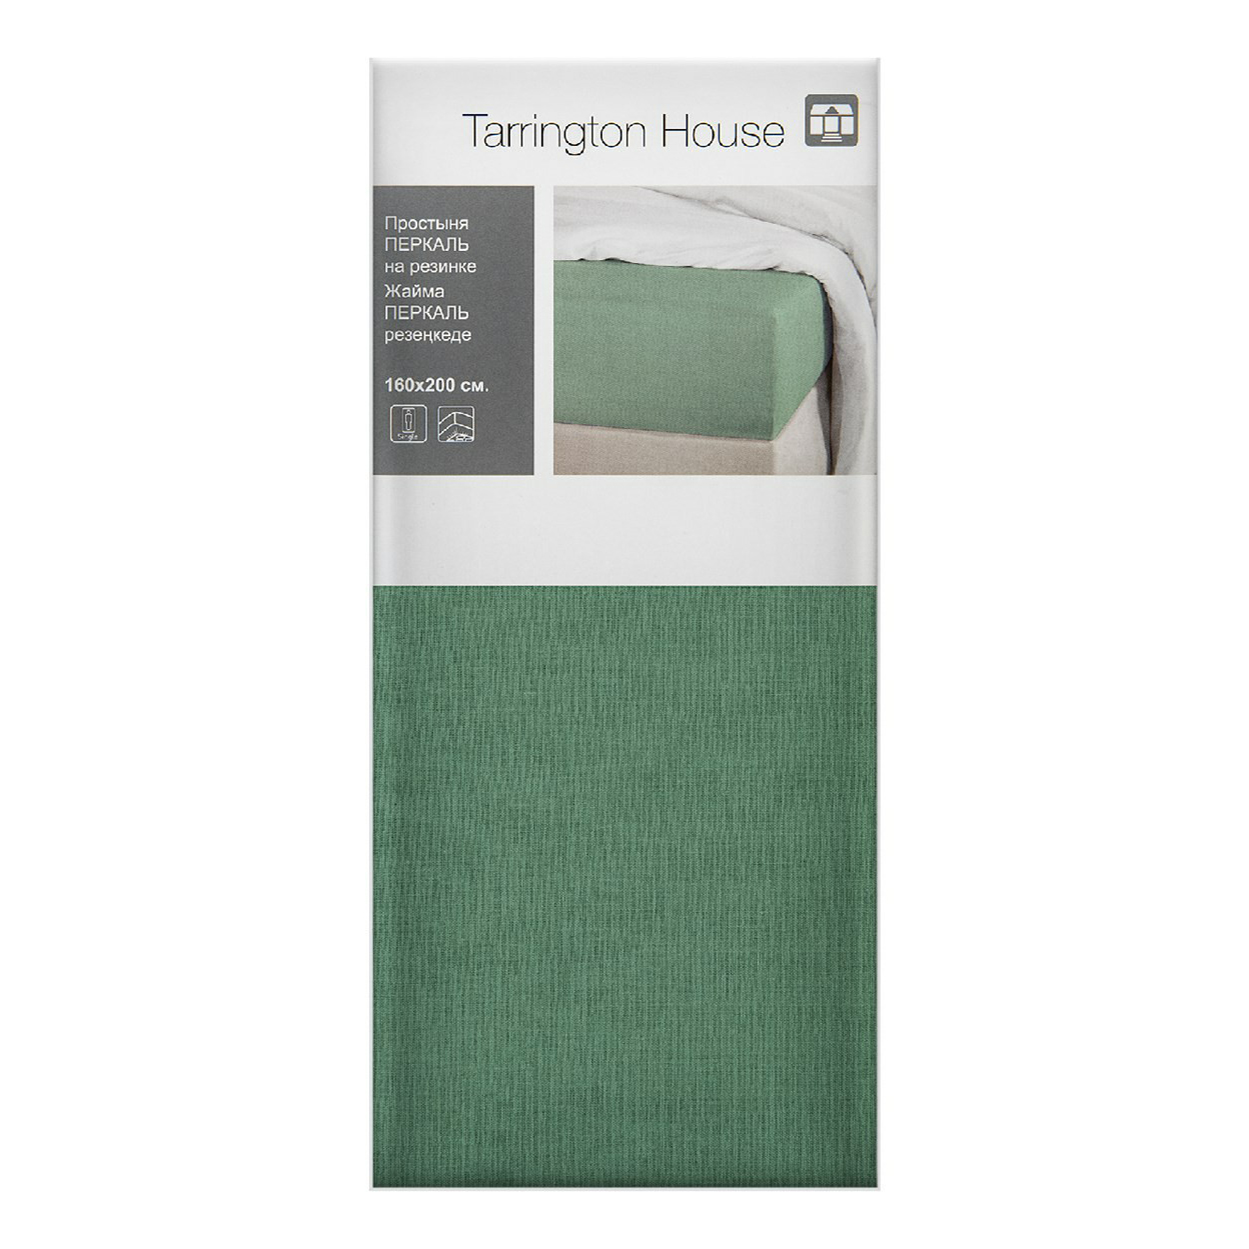 Простыня на резинке Tarrington House полутораспальная 160 x 200 см перкаль зеленая